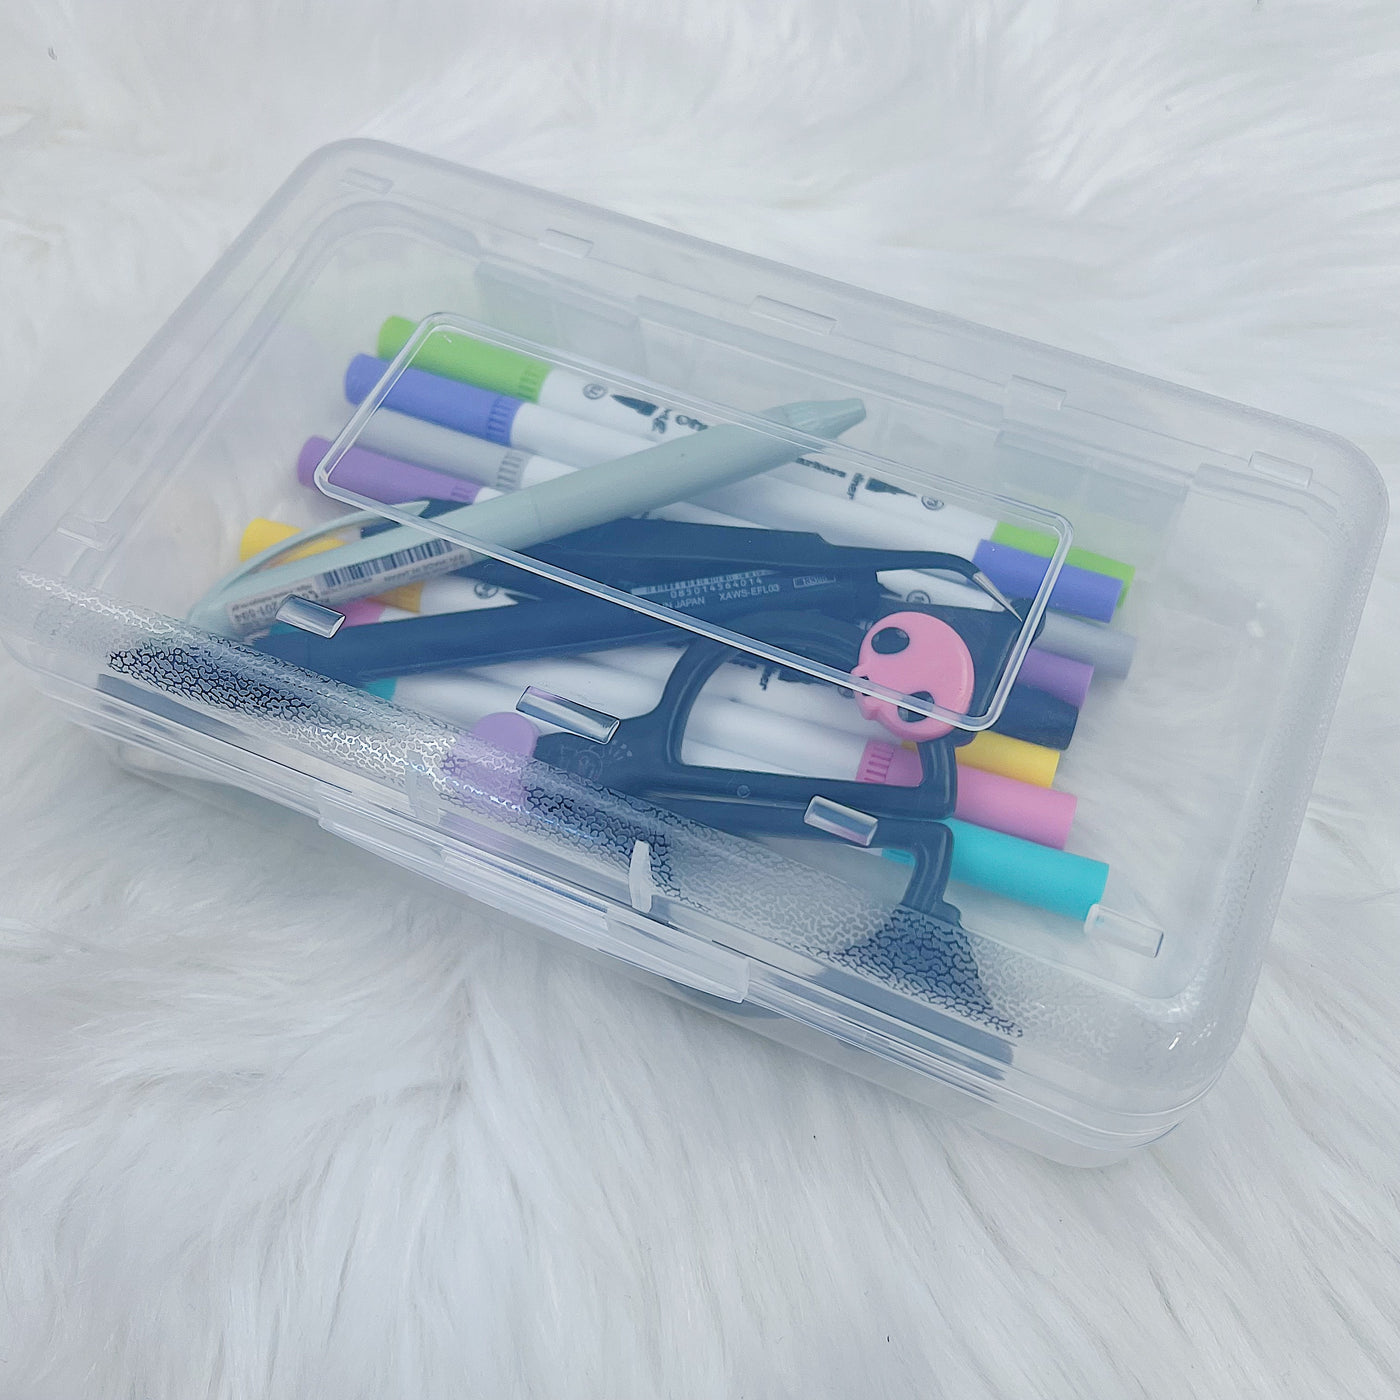 Clear Pencil Box